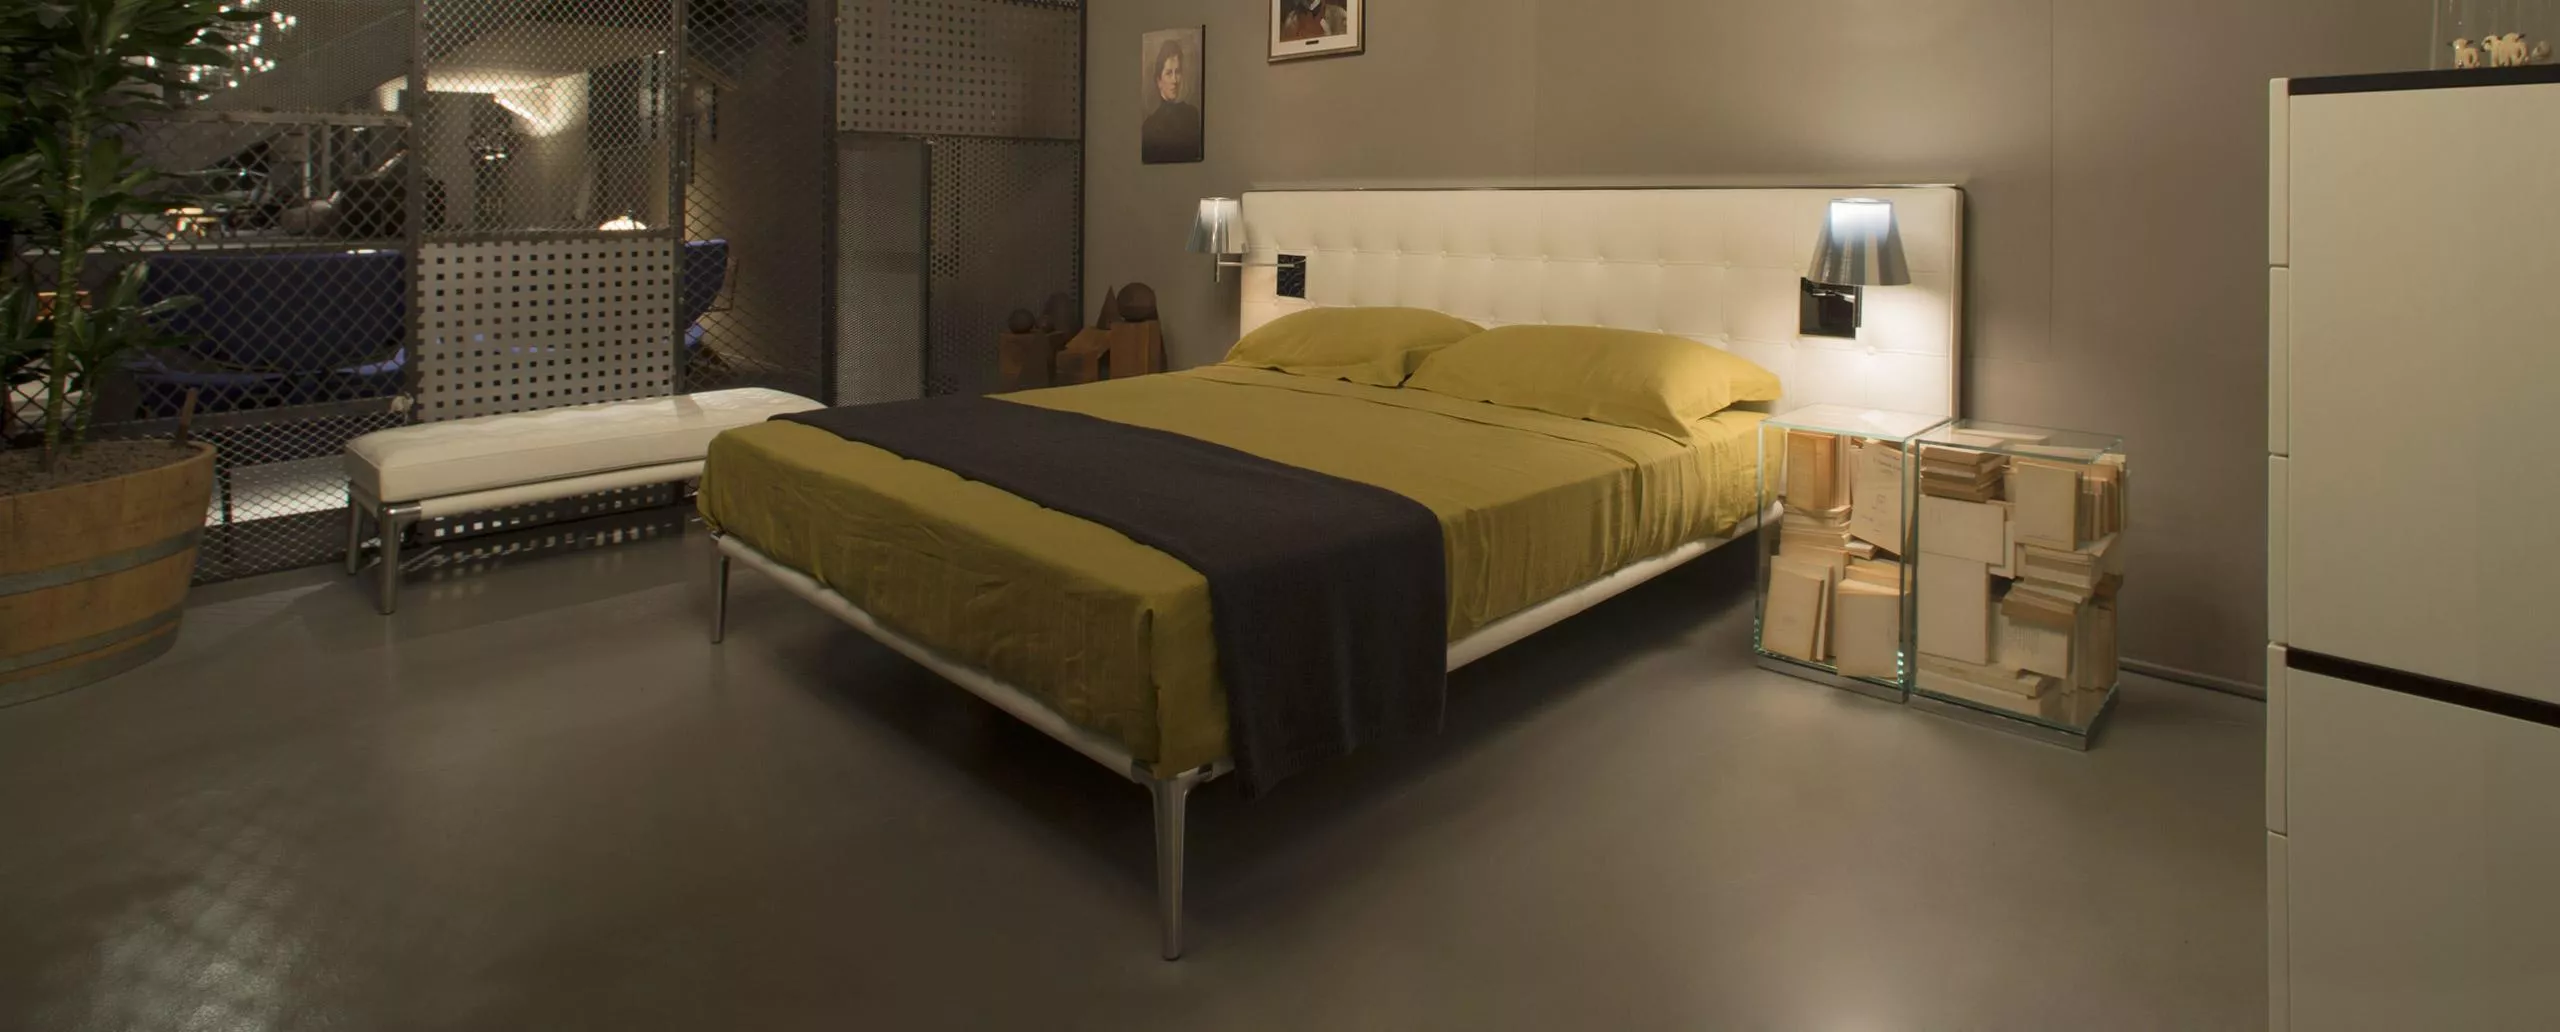 Кровать Volage Cassina L26/L27 — купить по цене фабрики